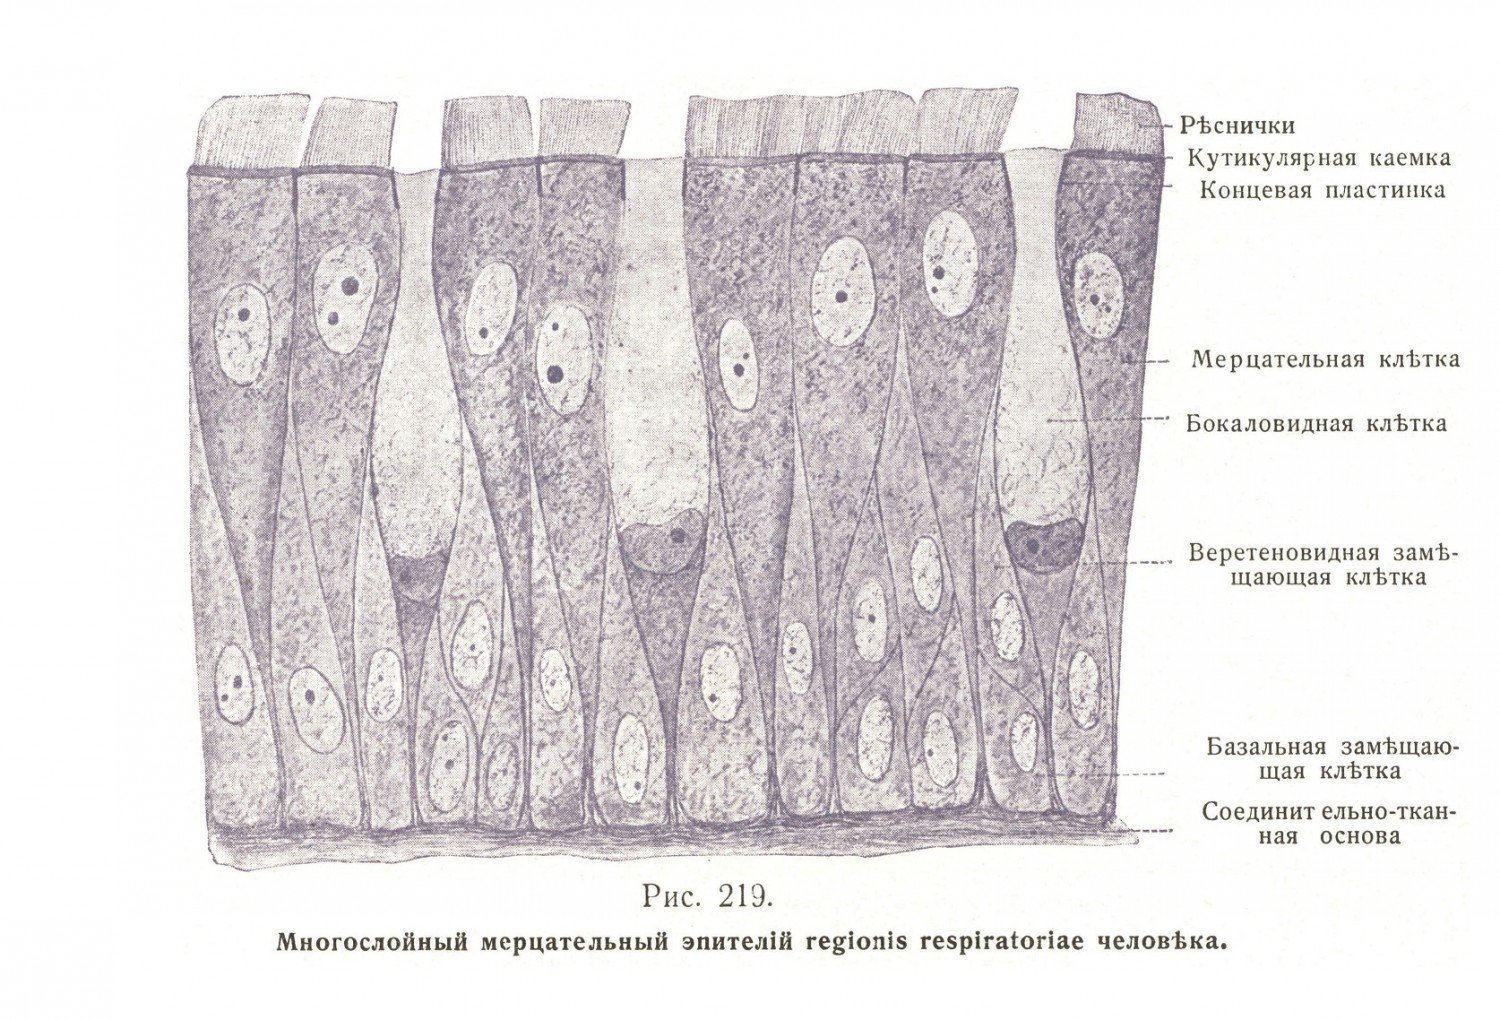 Многослойный мерцательный эпителий regionis respiratoriae человека